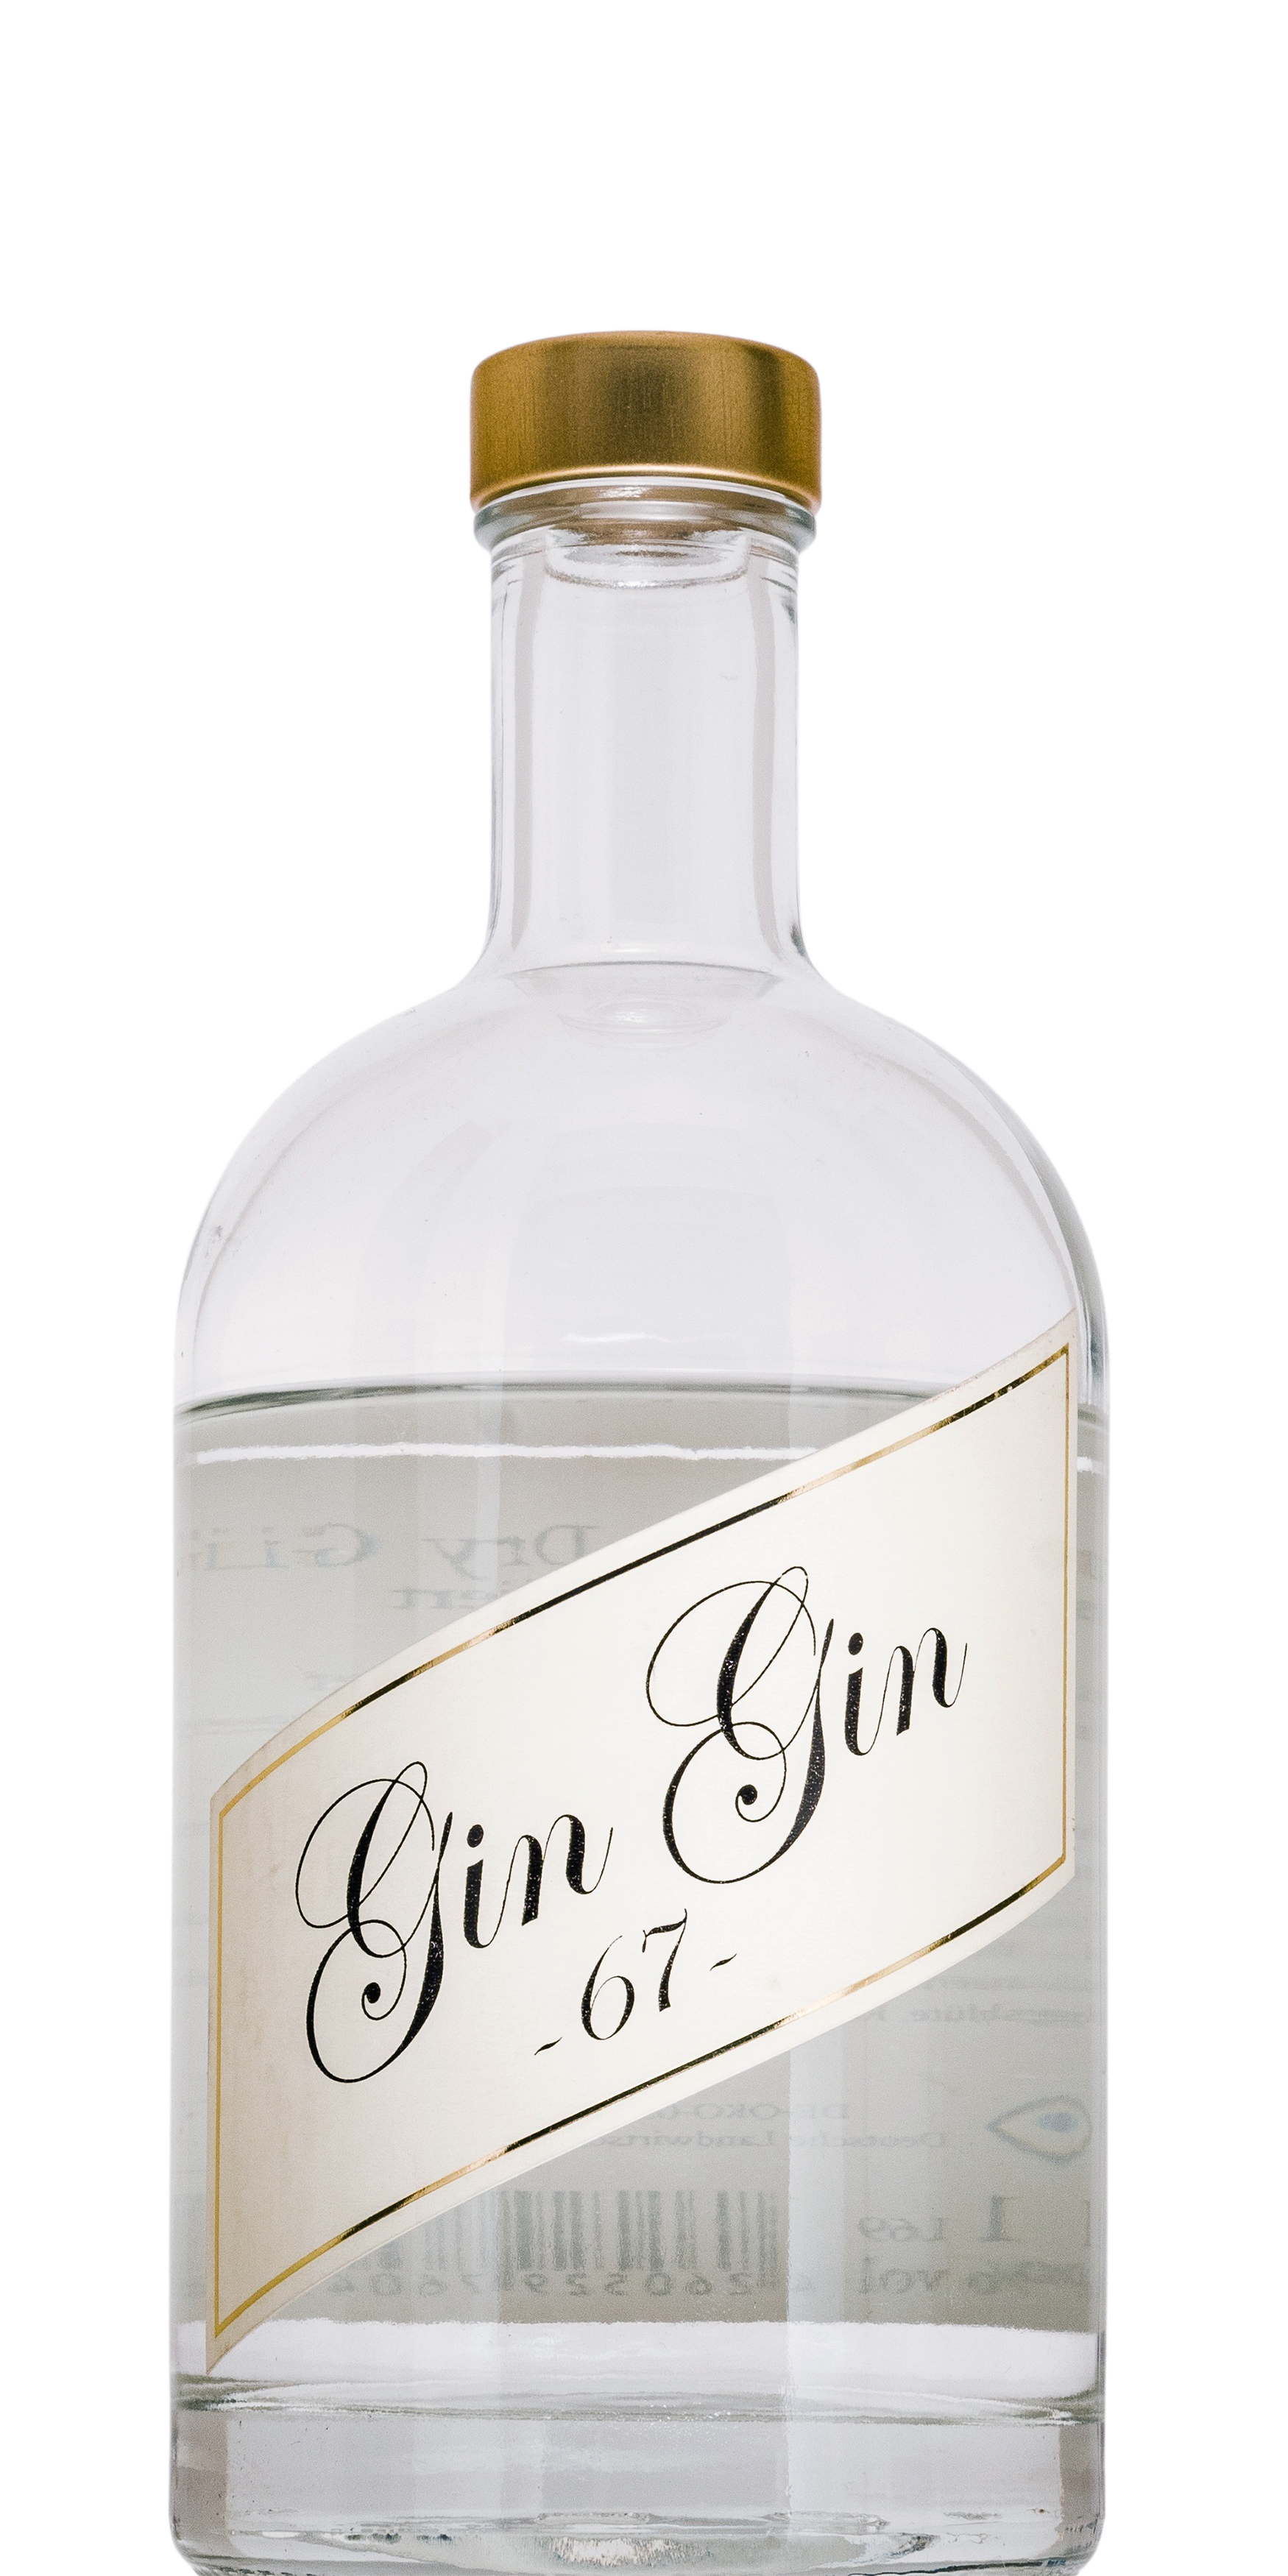 tuniberg-gin-gin-67-500ml.png